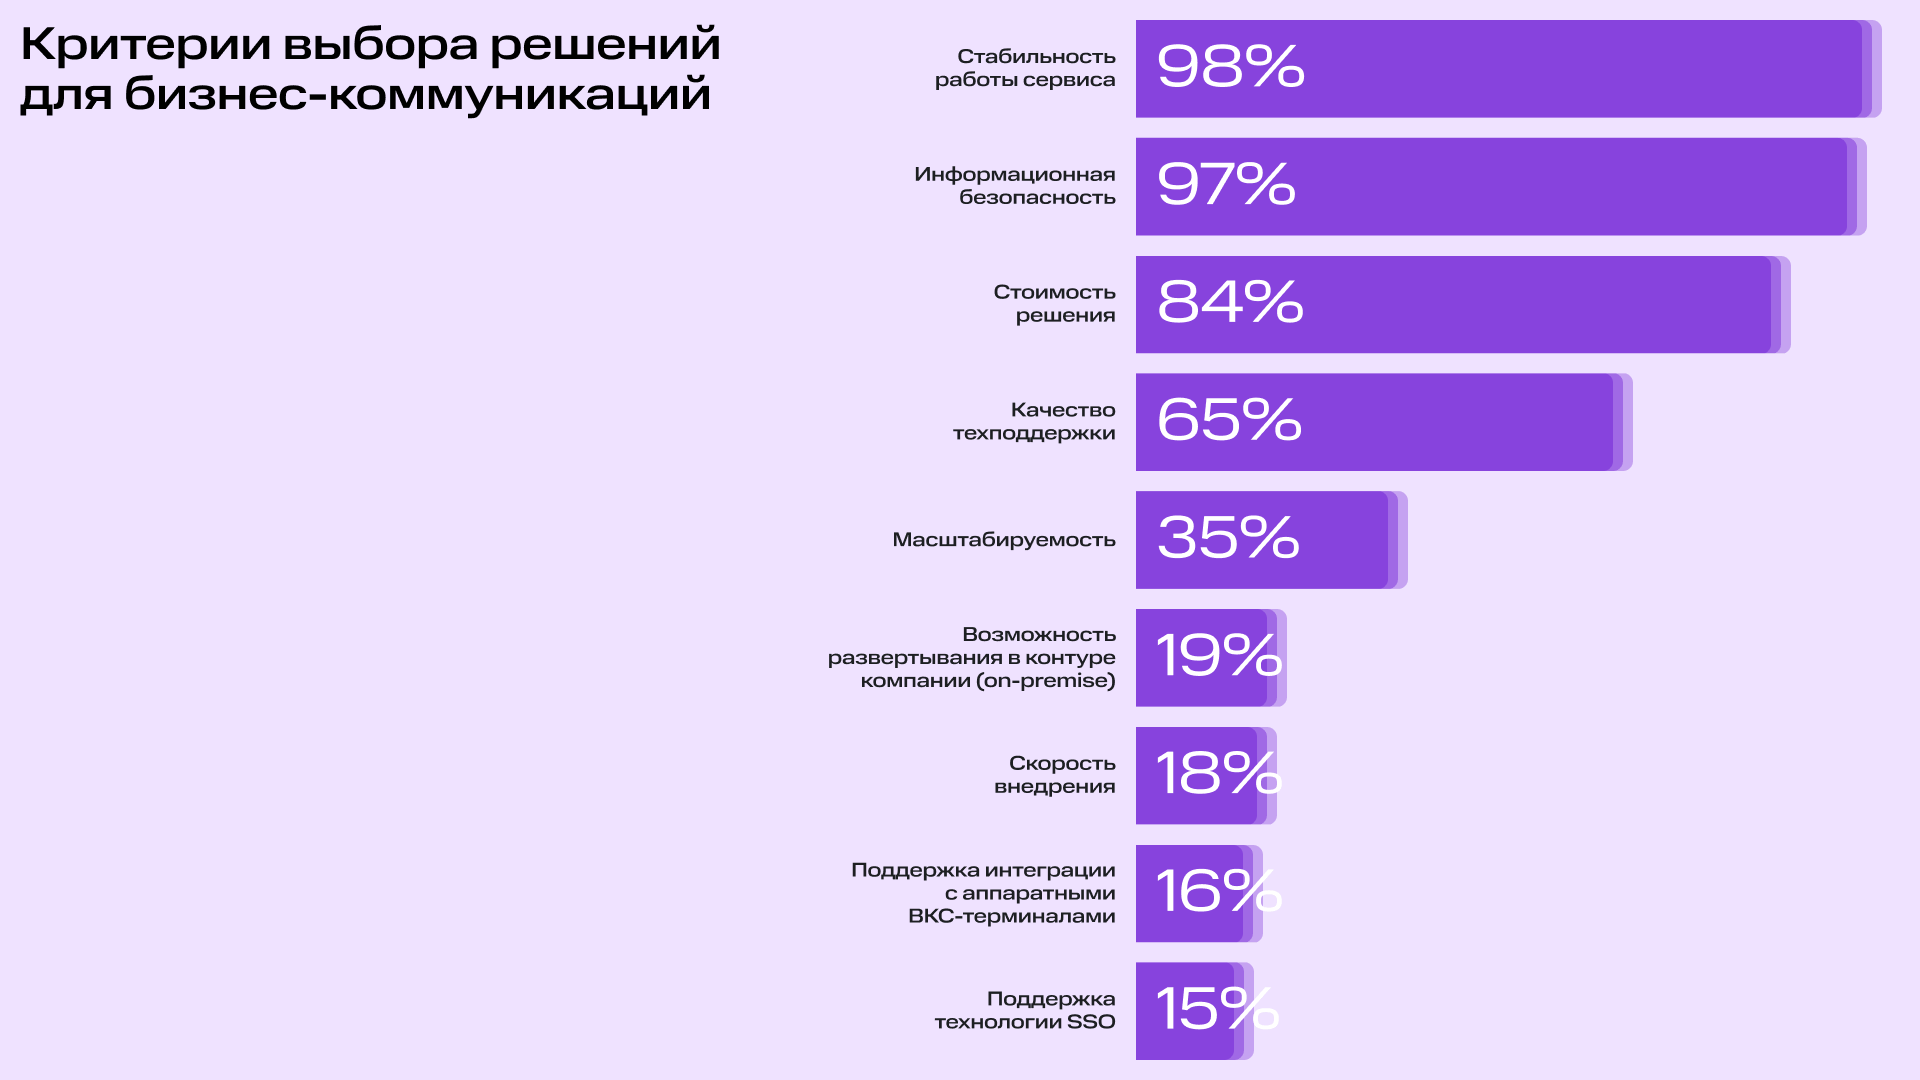 Исследование TAdviser и МТС Линк: 42% крупных компаний перейдут на российские платформы для бизнес-коммуникаций в 2024 году | Фото 1 2 1